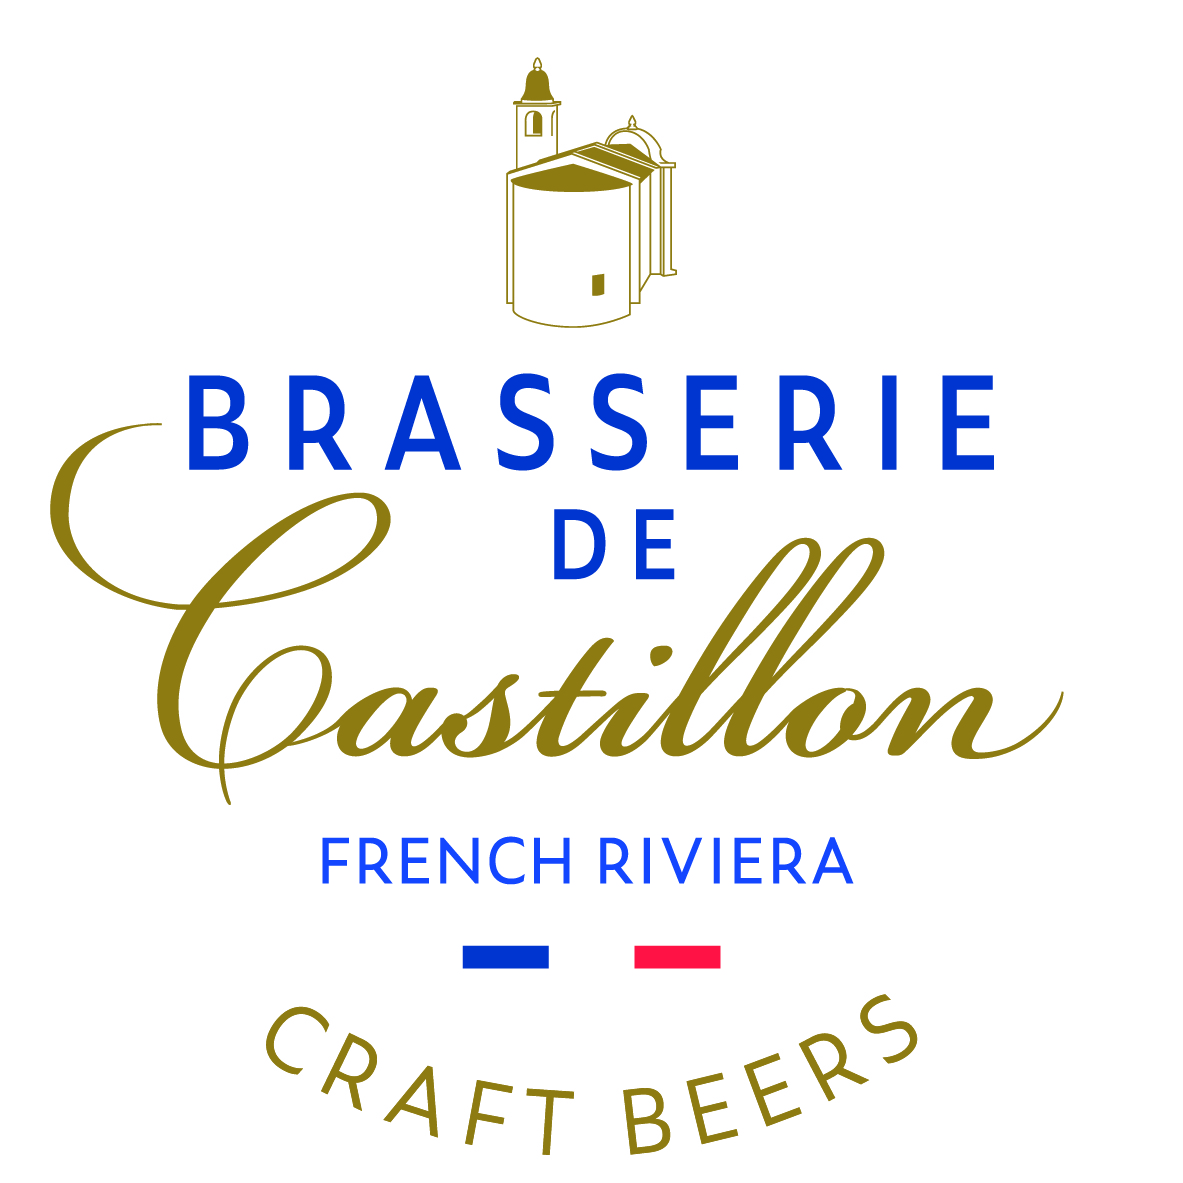 Brasserie de Castillon